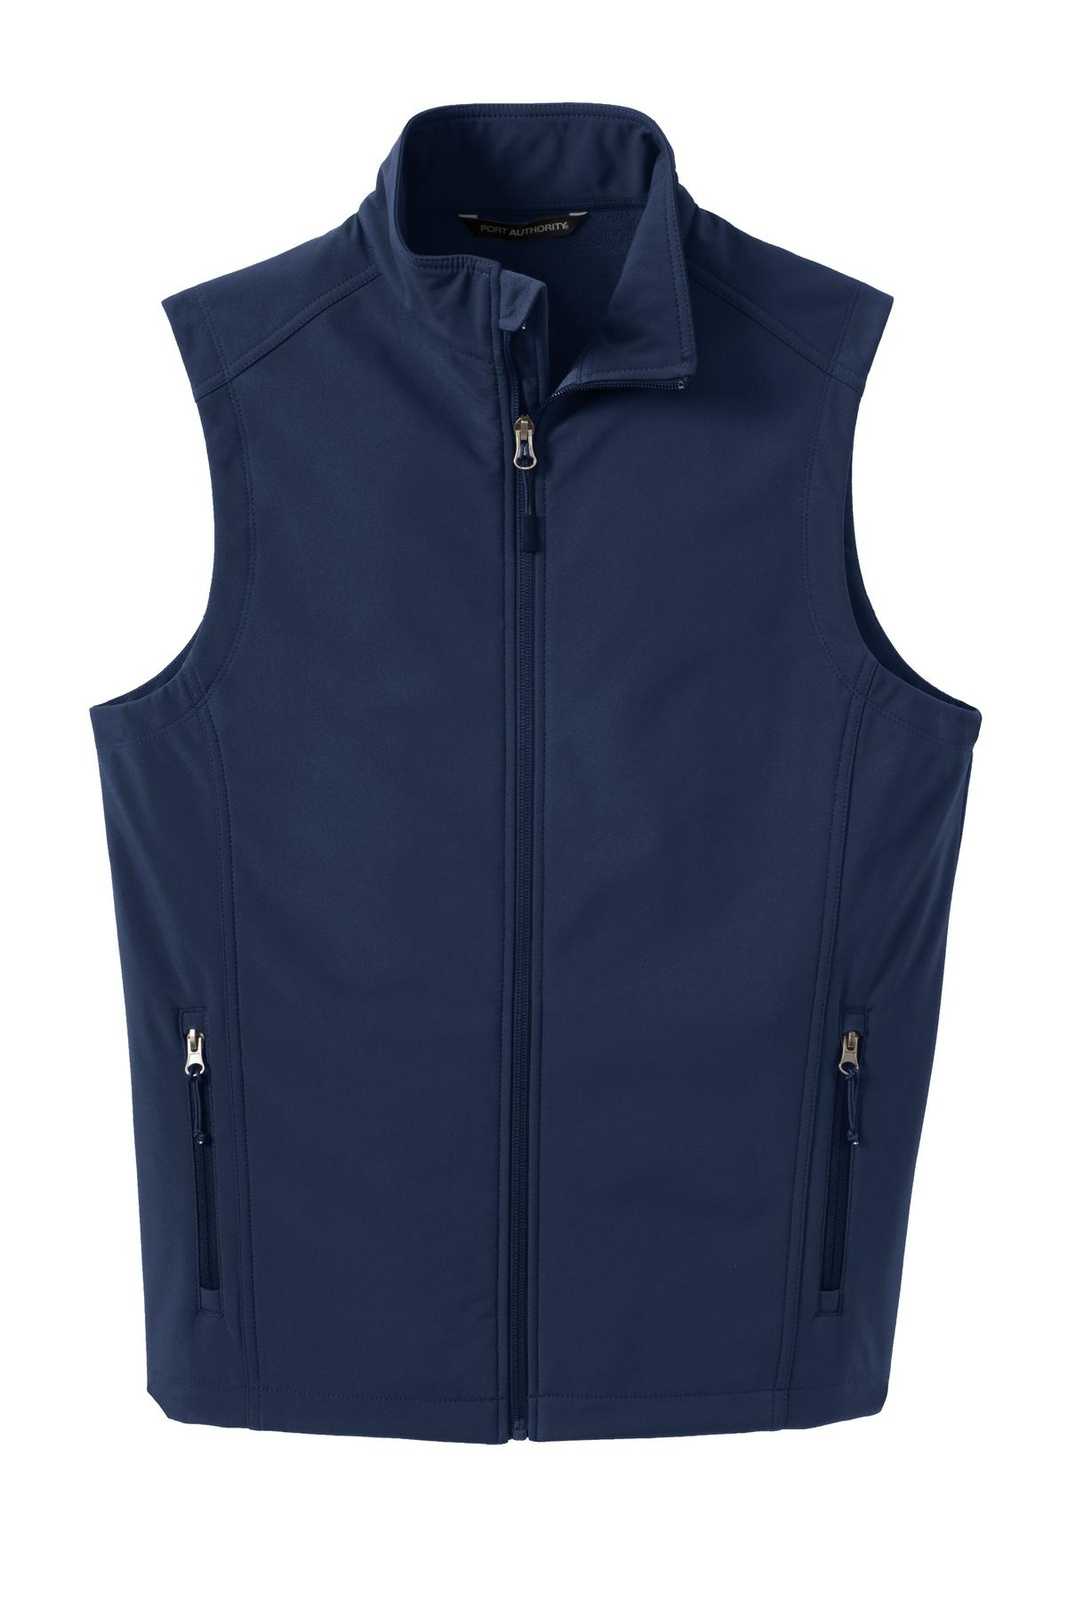 Port Authority J325 Core Soft Shell Vest - Dress Blue Navy - HIT a Double - 5